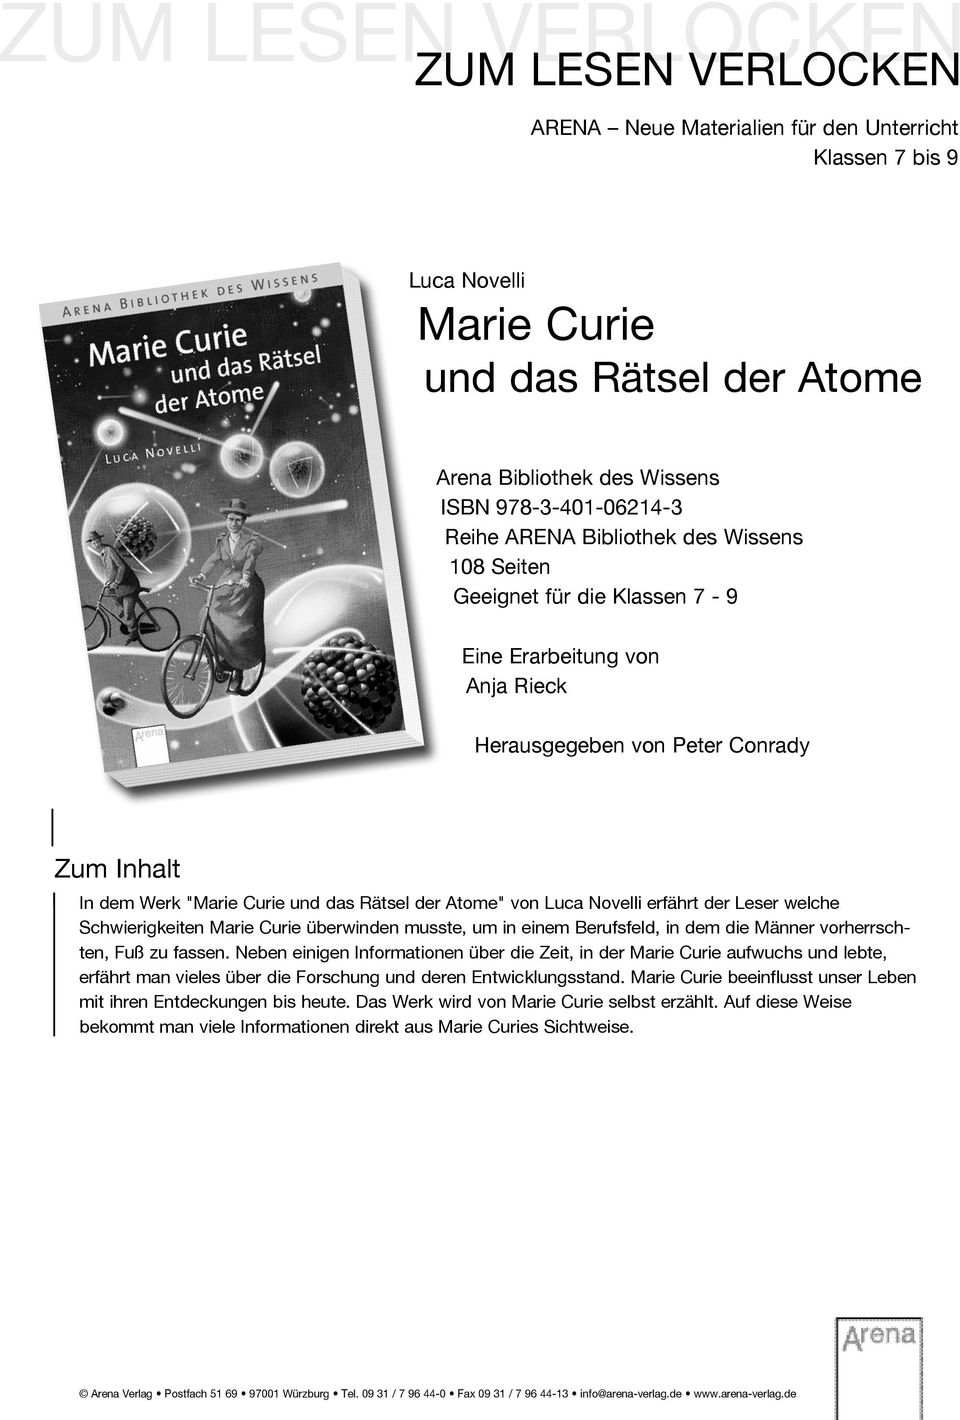 Atome" von Luca Novelli erfährt der Leser welche Schwierigkeiten Marie Curie überwinden musste, um in einem Berufsfeld, in dem die Männer vorherrschten, Fuß zu fassen.